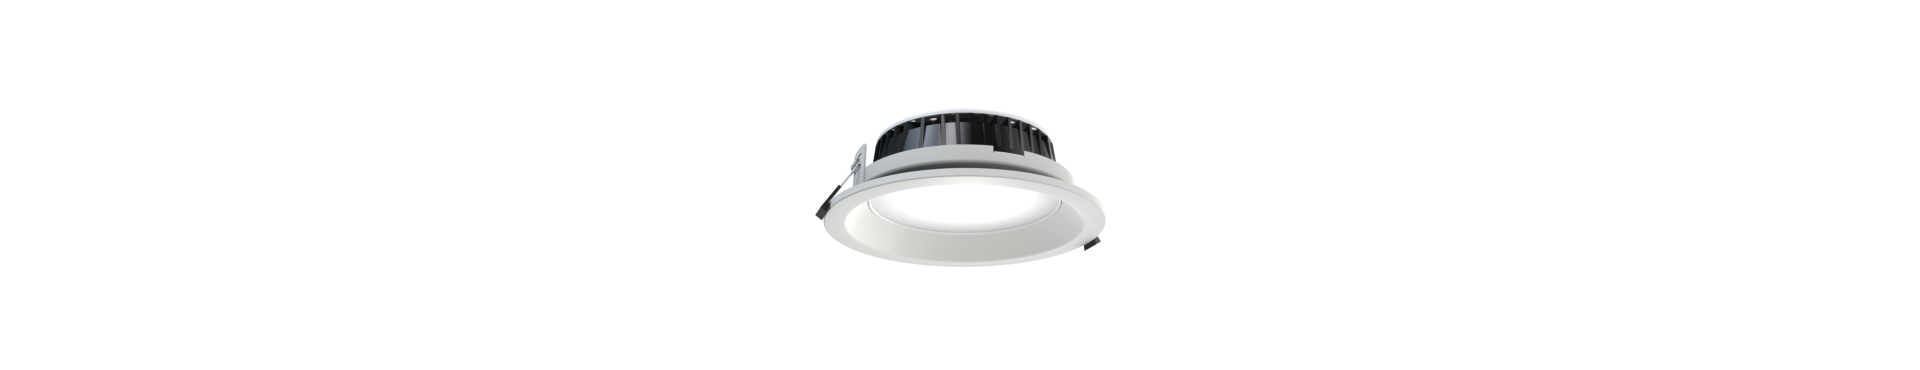 Downlight - LED downlight med direkte og Indirekte lys